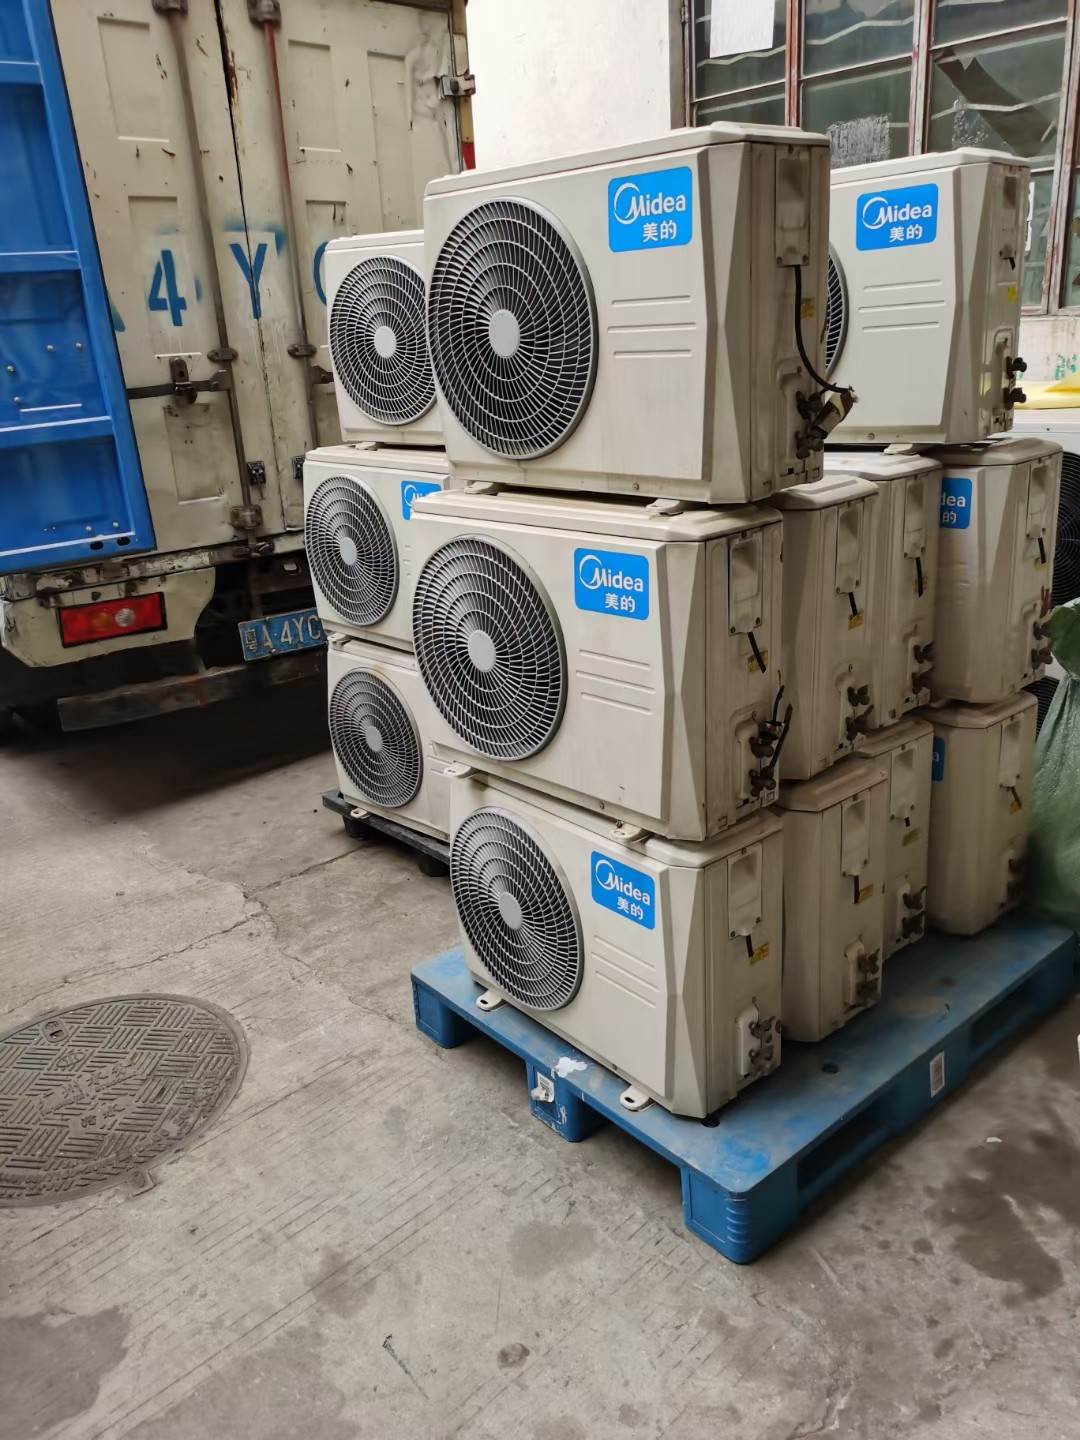 广州番禺区空调回收,现金结算,大型制冷机回收厂家